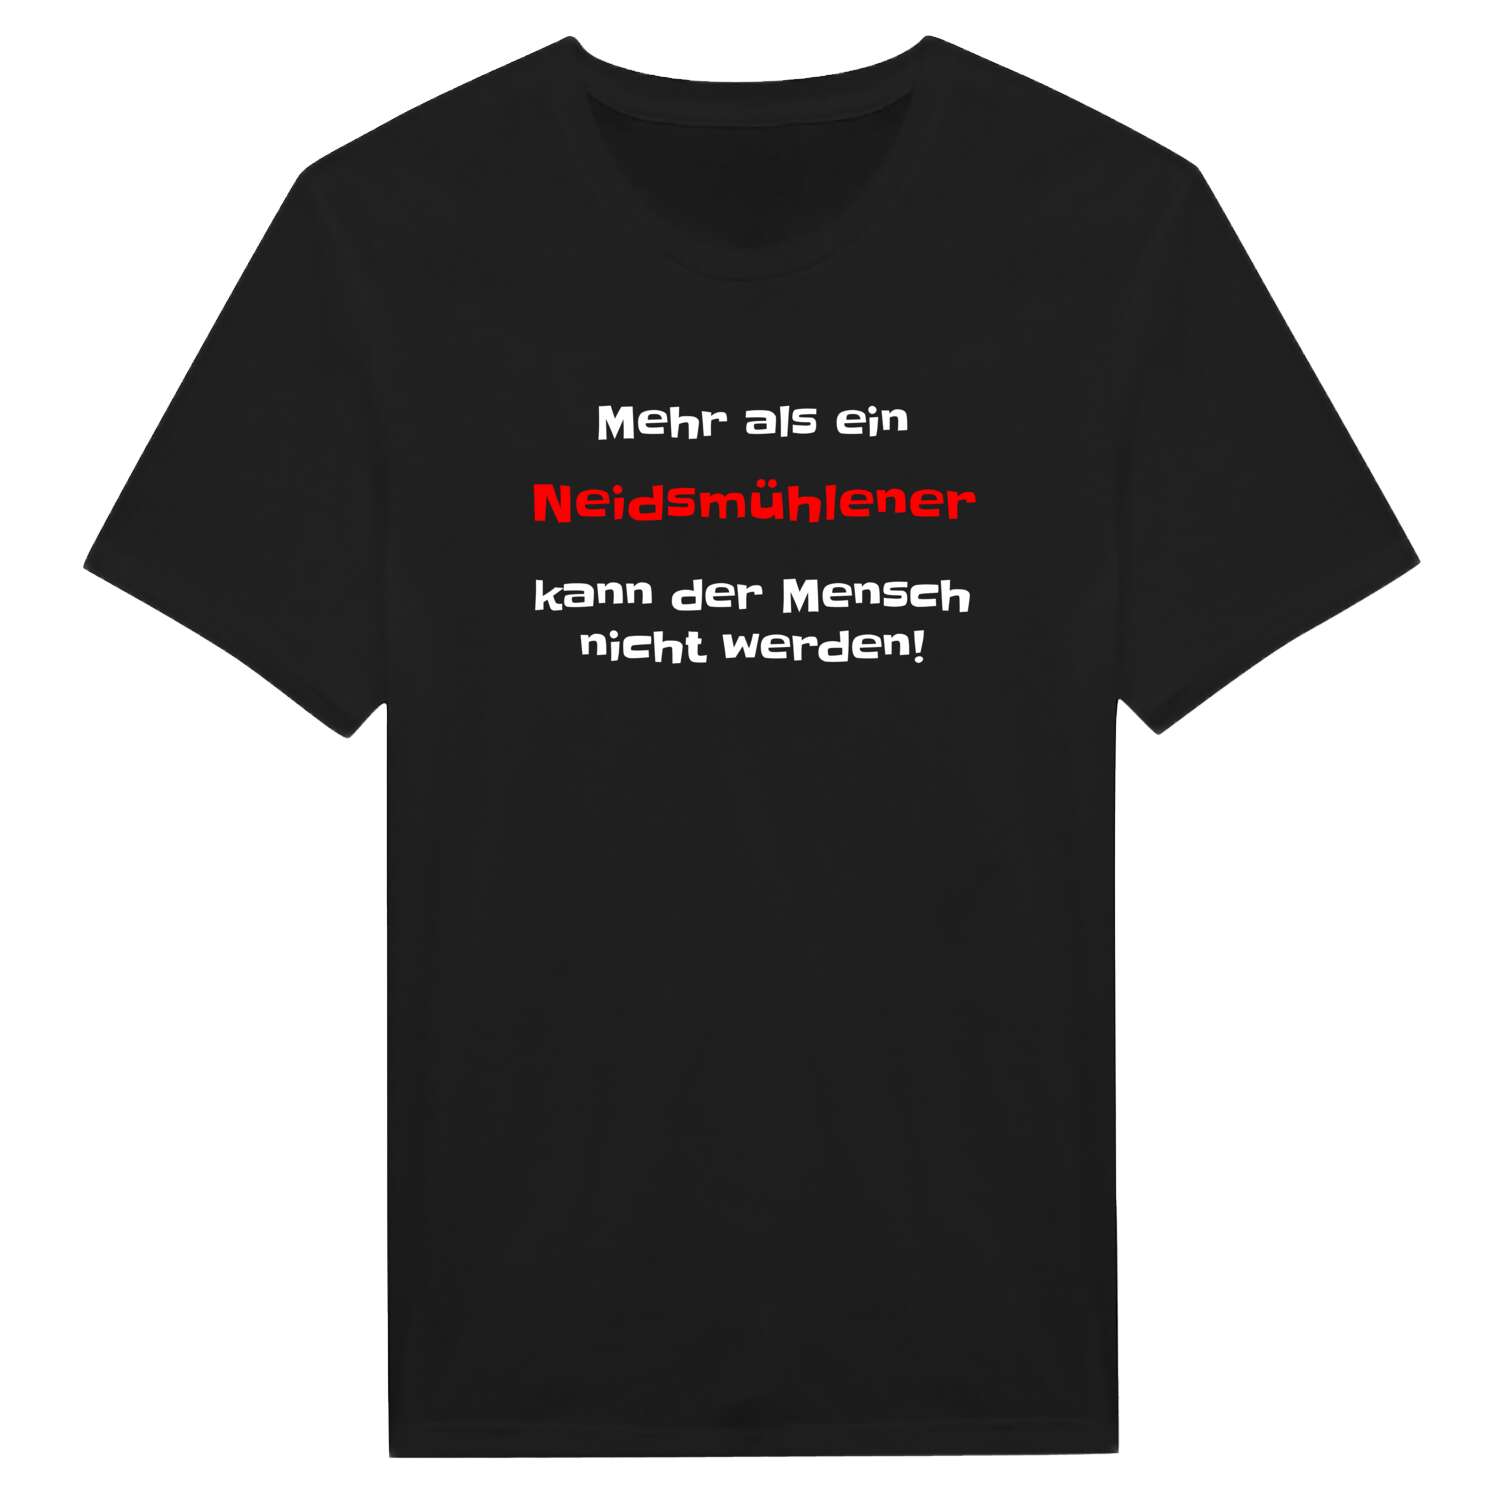 Neidsmühle T-Shirt »Mehr als ein«